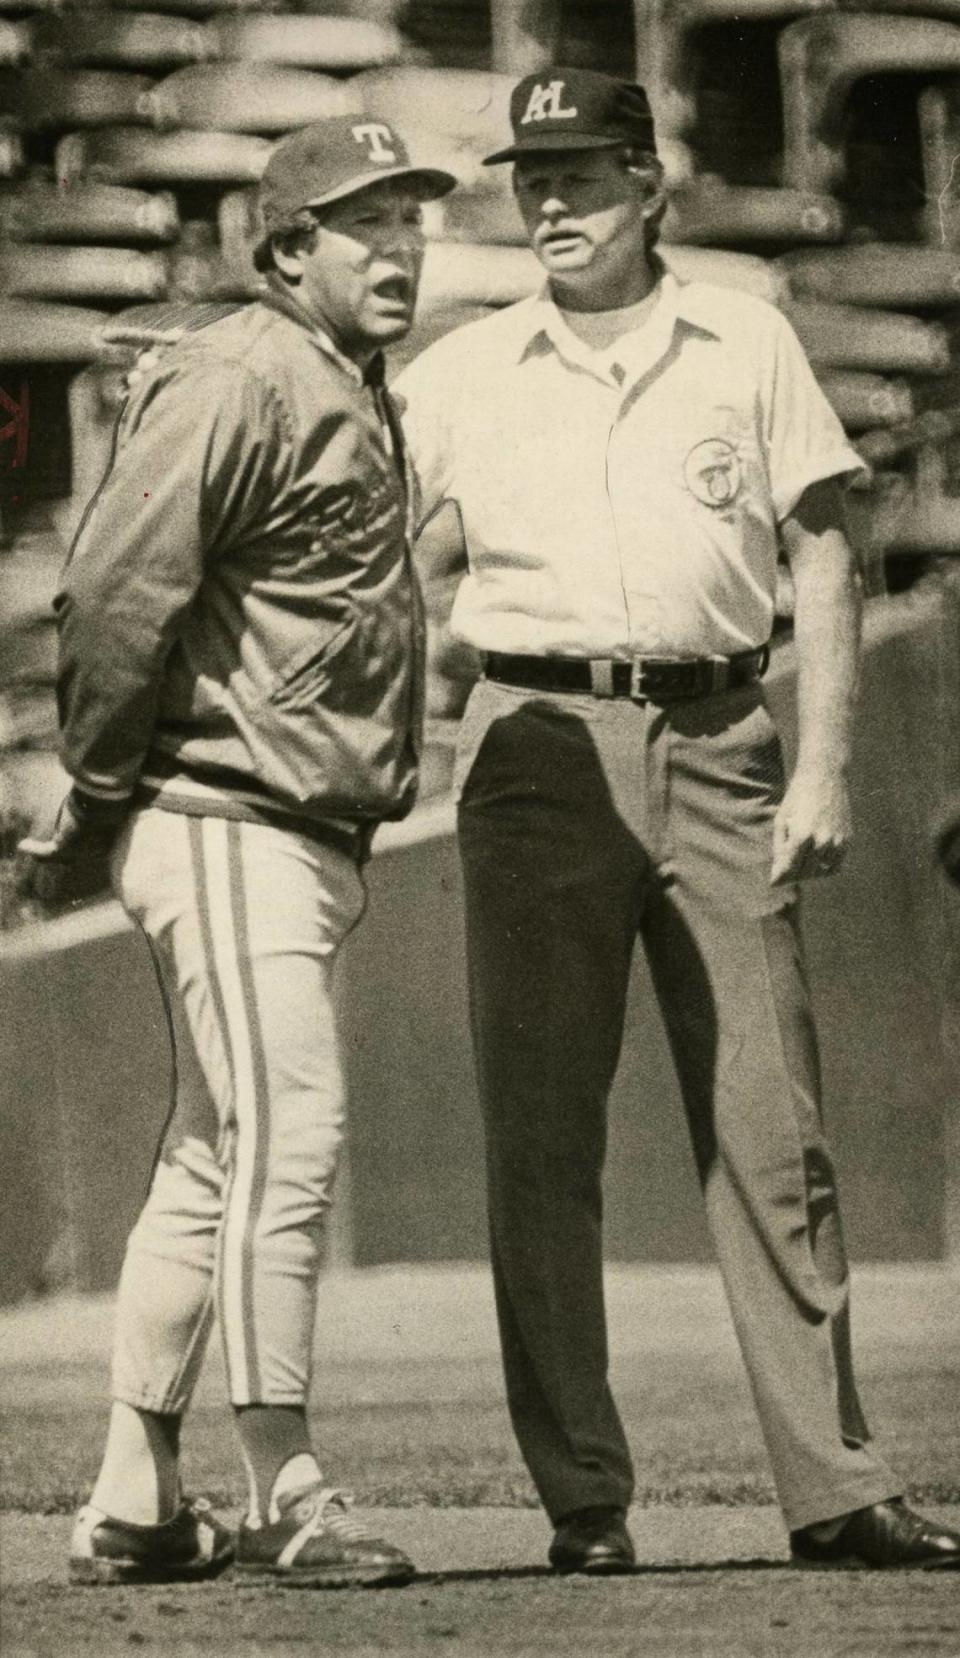 Pat Corrales, originario de Fresno y ex estrella de beisbol y fotball en Fresno High a finales de la década de 1950, se convirtió en 1978 en el primer mánager de origen mexicano de las Grandes Ligas de Beisbol, al ser ascendido por los Rangers de Texas.